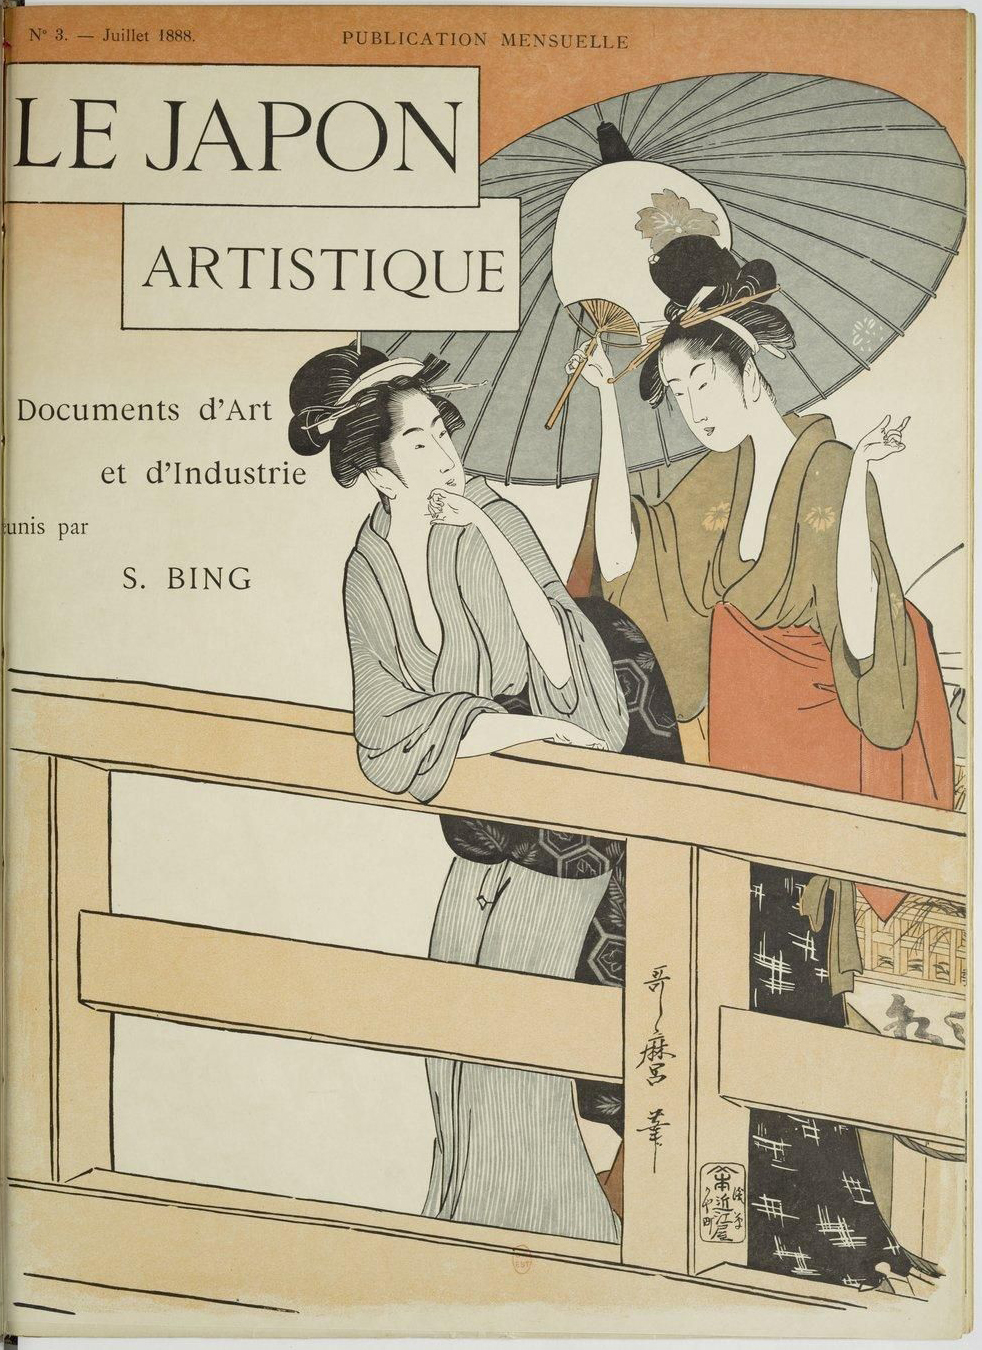 Cover of Le Japon Artistique, July 1888